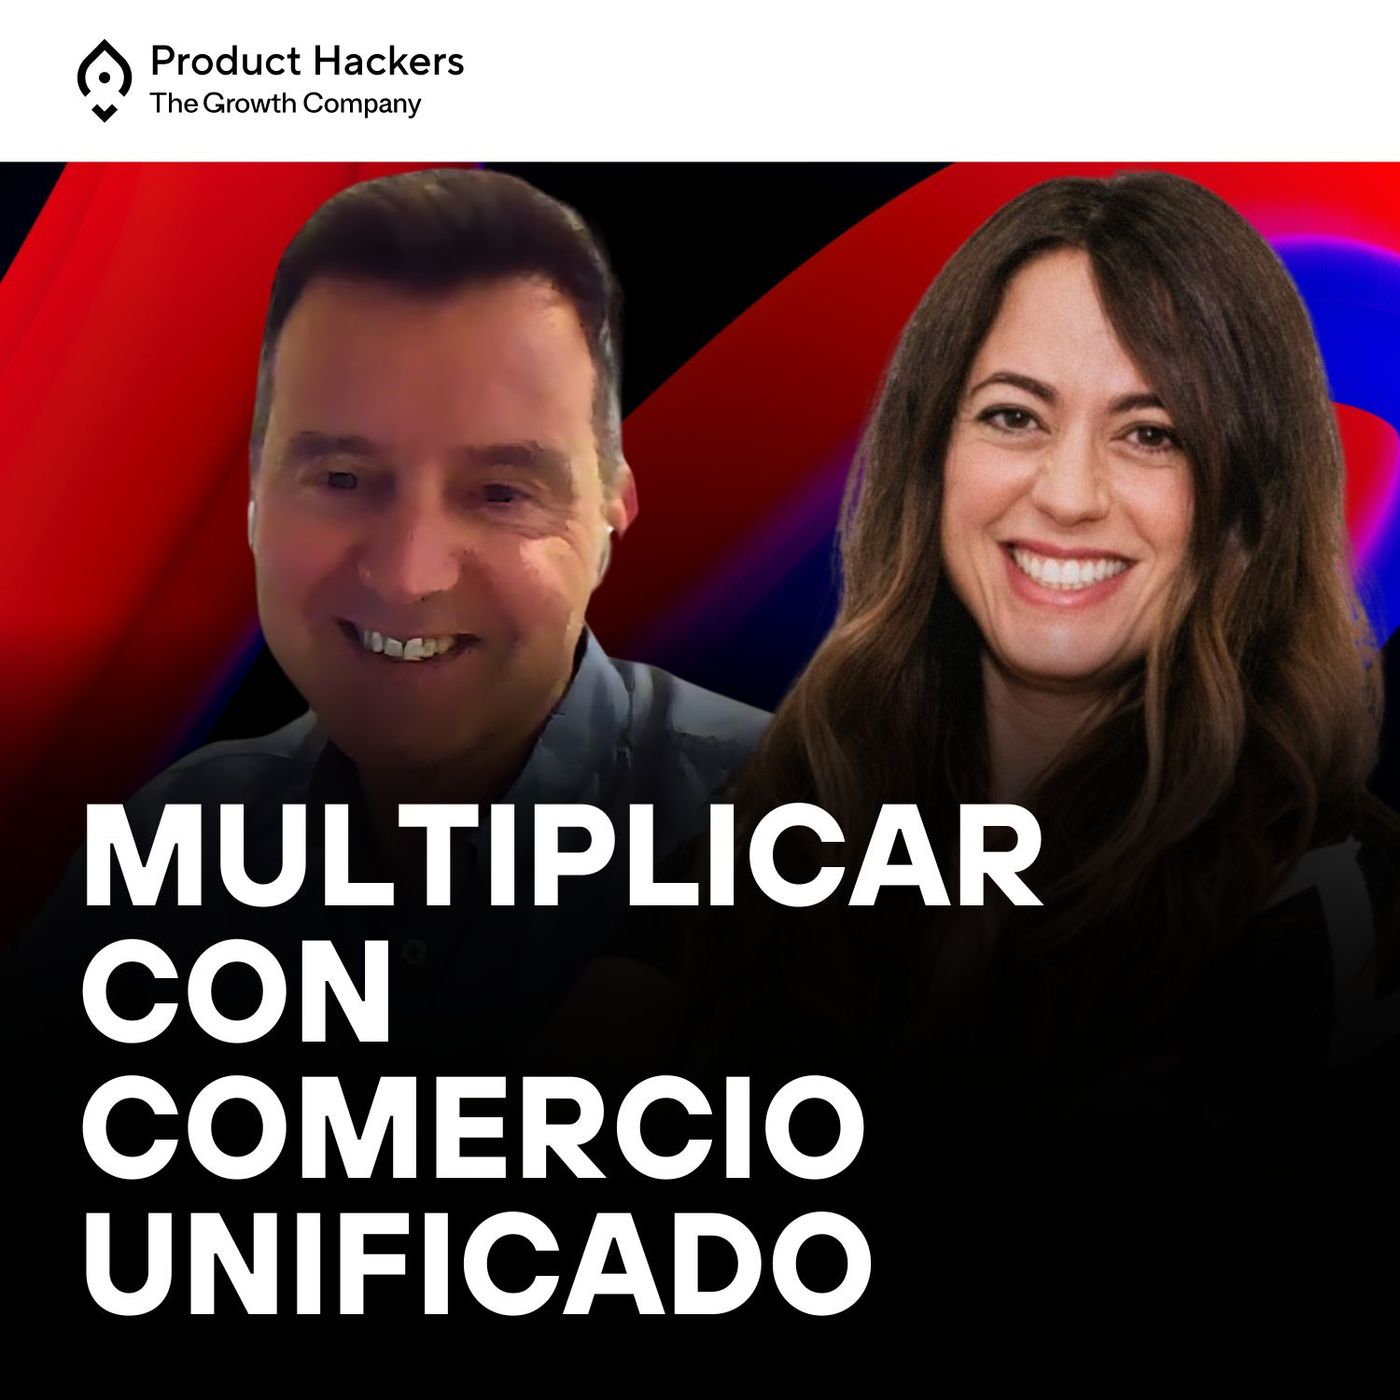 Omnichannel Talks #1: Multiplicar en eCommerce con comercio unificado con Xavi Colomé y Belén Muñoz